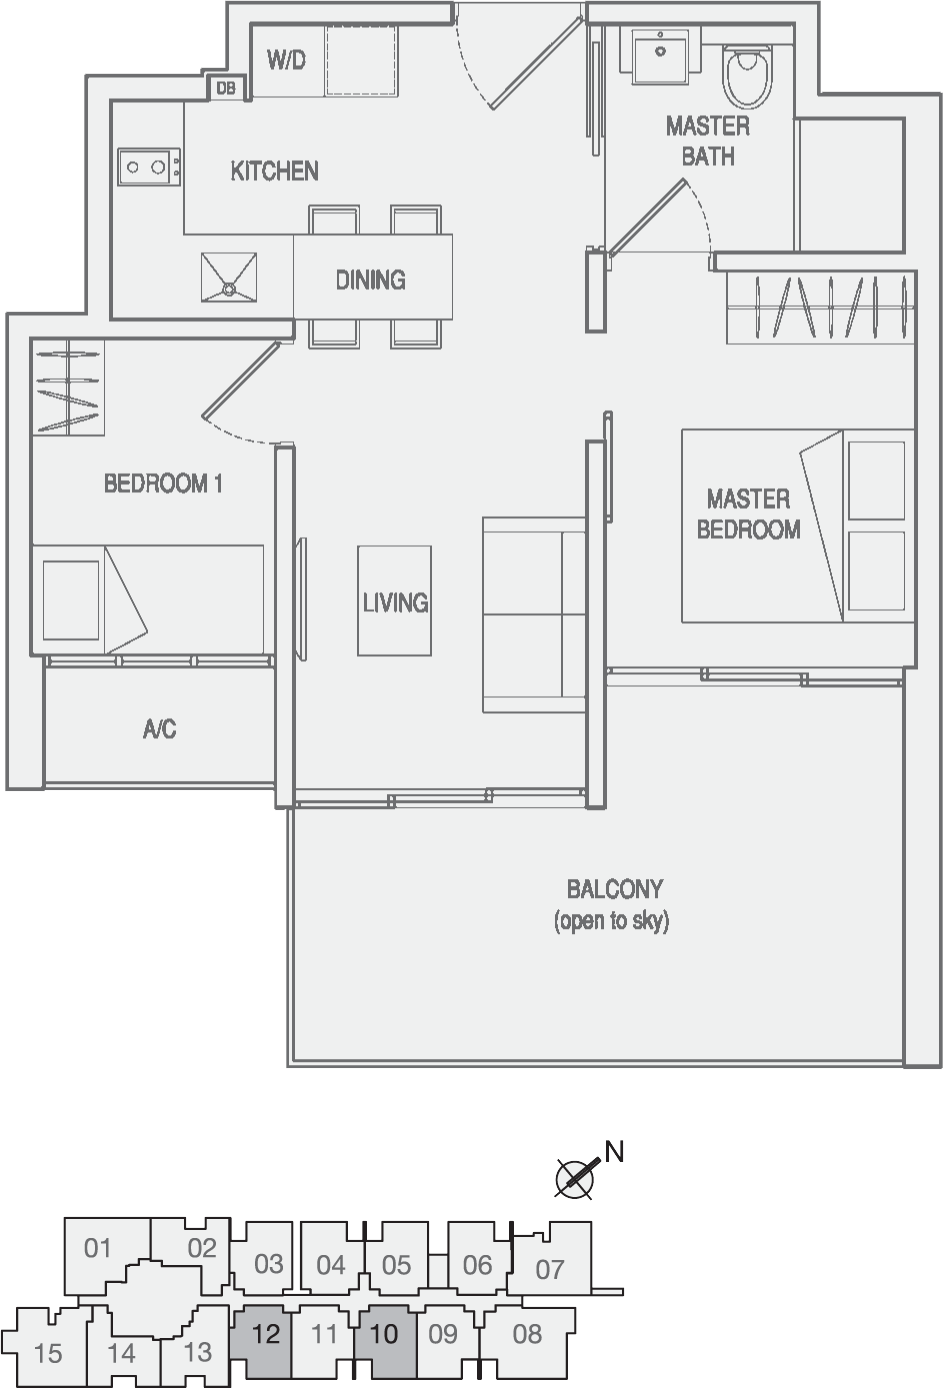 Type Type-C2 2 Bedroom with Balcony Floor Plan